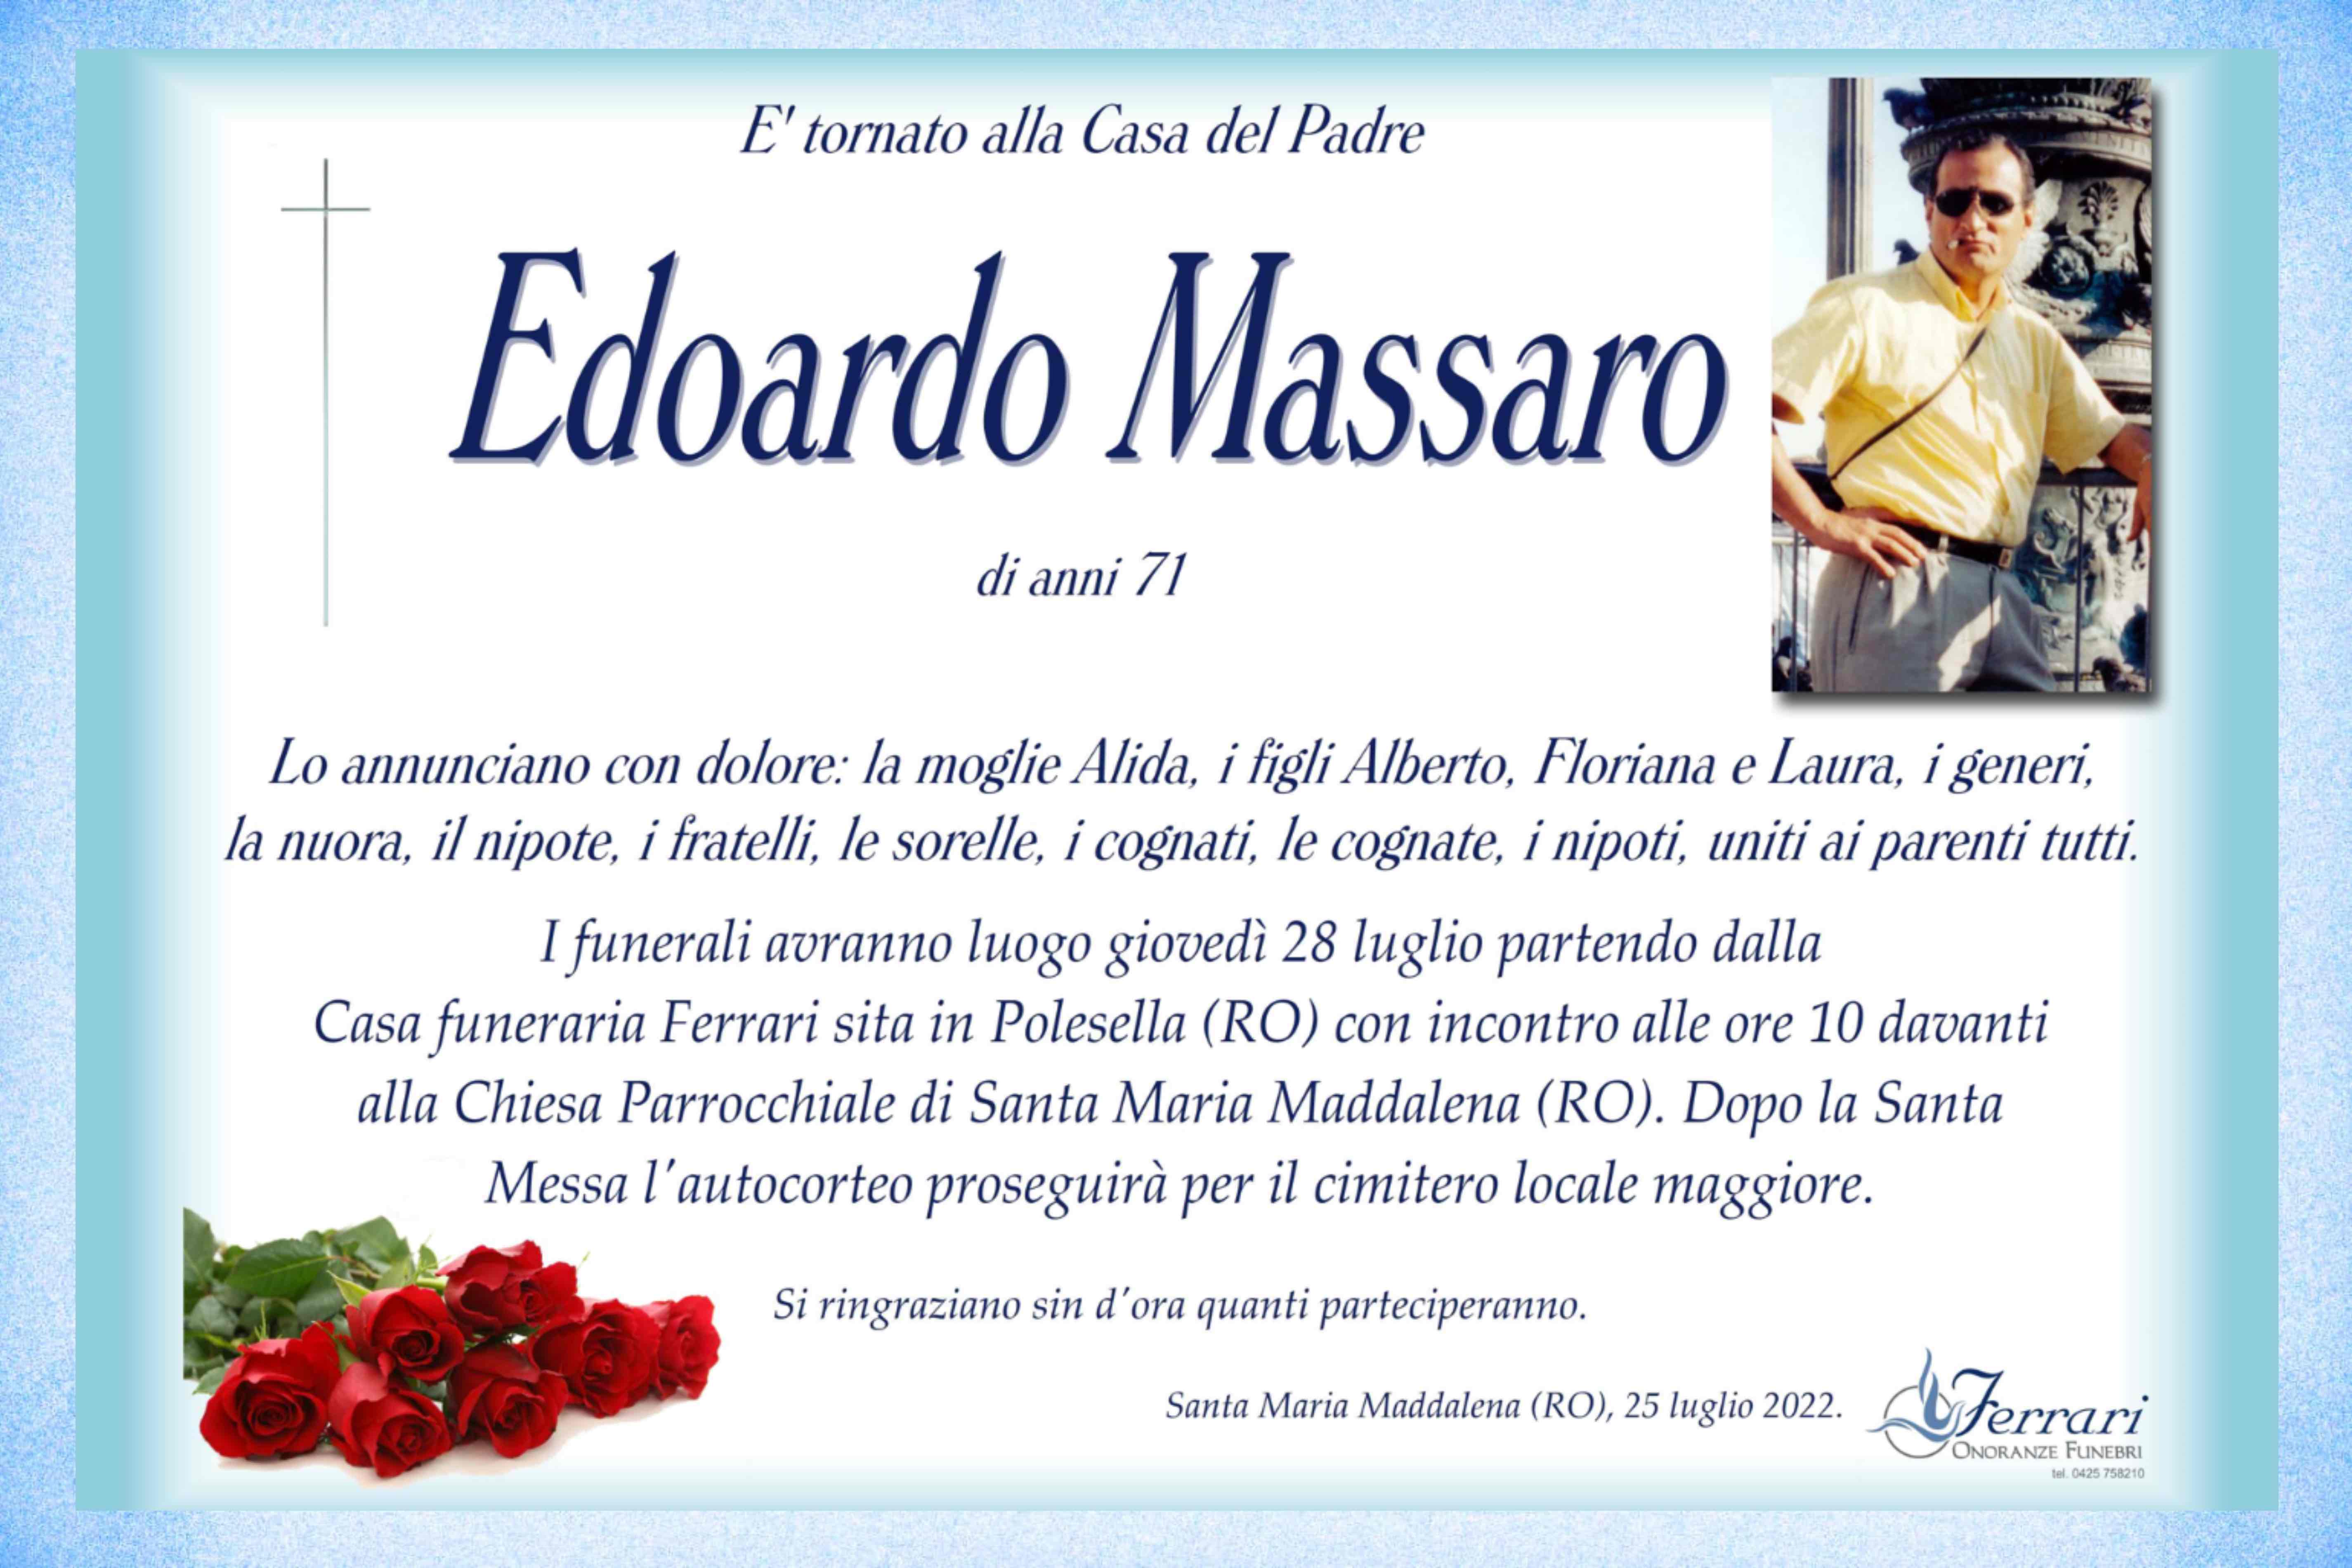 Edoardo Massaro